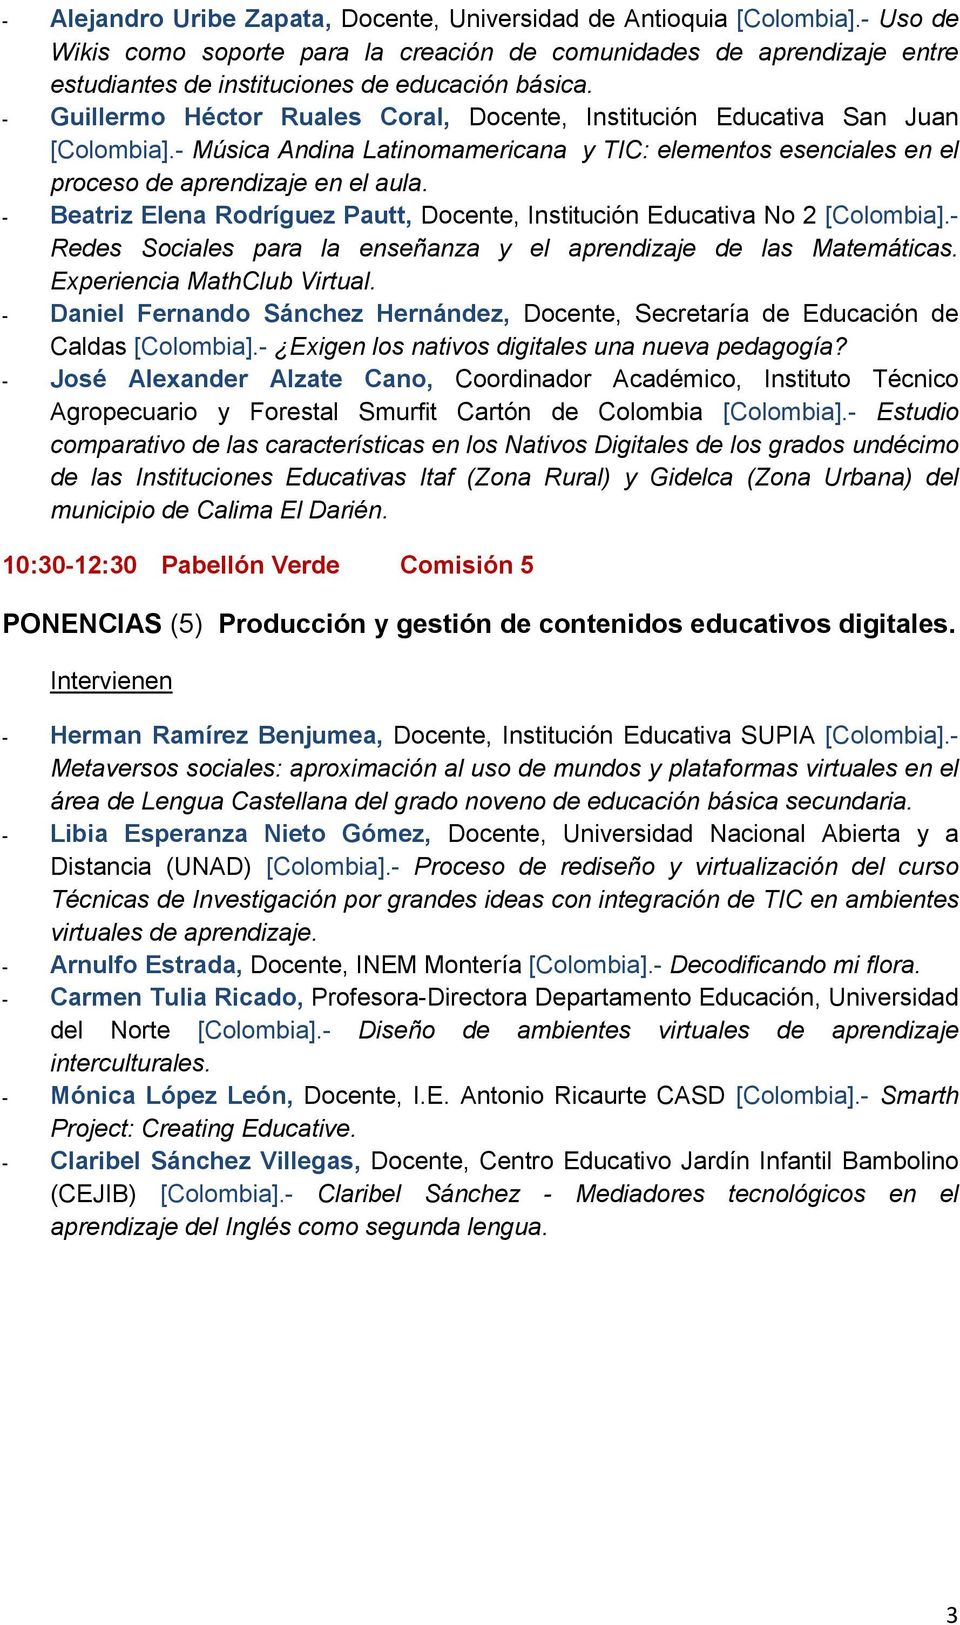 - Guillermo Héctor Ruales Coral, Docente, Institución Educativa San Juan [Colombia].- Música Andina Latinomamericana y TIC: elementos esenciales en el proceso de aprendizaje en el aula.